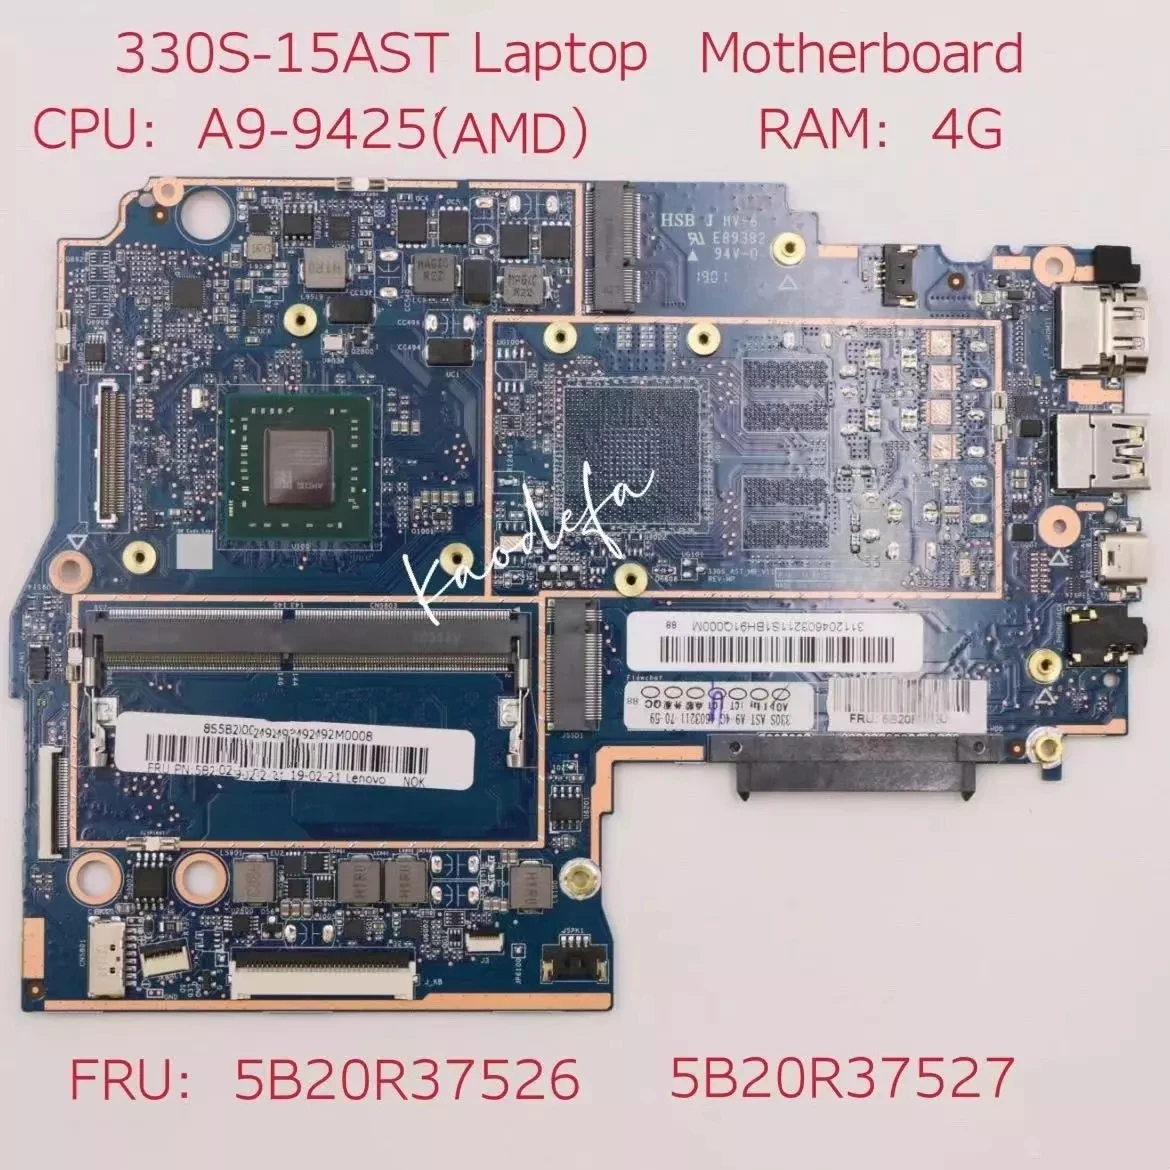     Lenovo Ideapad 330S-15AST MB 3N81F9 CPU:A9-9425 AMD RAM:4G DDR4 FRU: 5B20R37527 5B20R37526 100%  